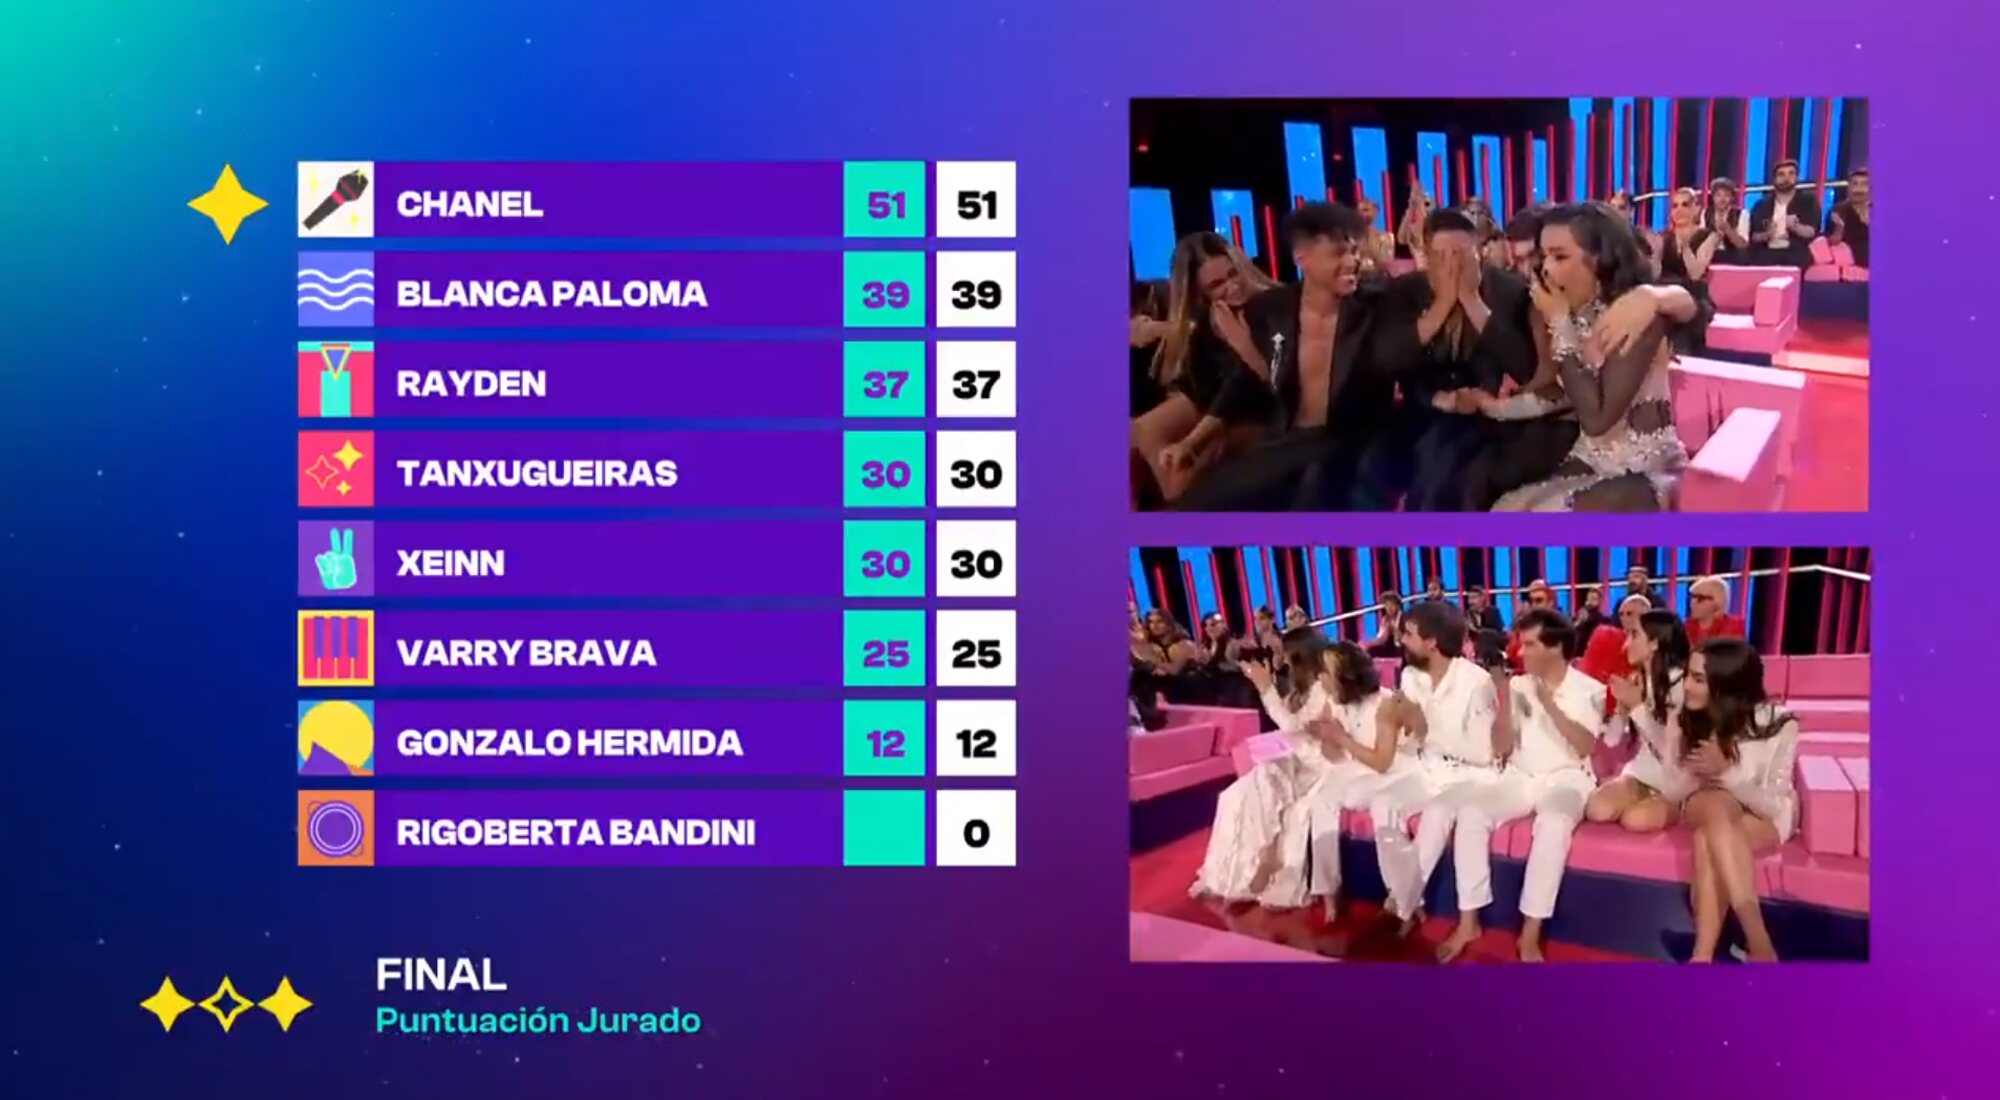 Eurovisión 2022: ¿Cómo será la votación para elegir el representante de España?